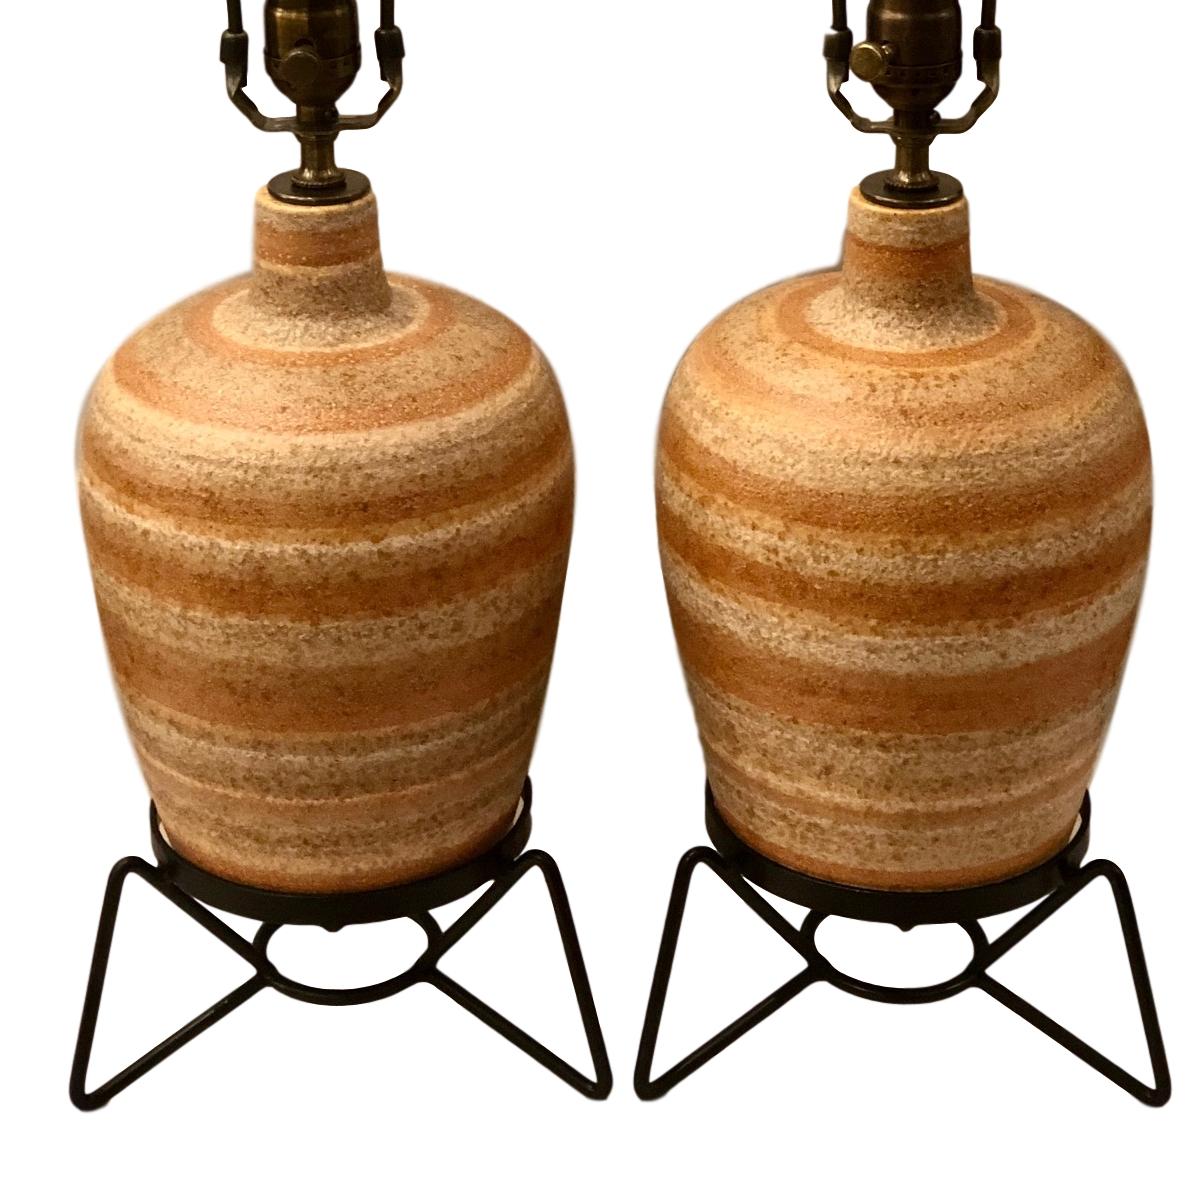 Une paire de lampes de table italiennes en céramique datant des années 1950 avec des bases en fer.

Mesures :
Hauteur du corps : 15